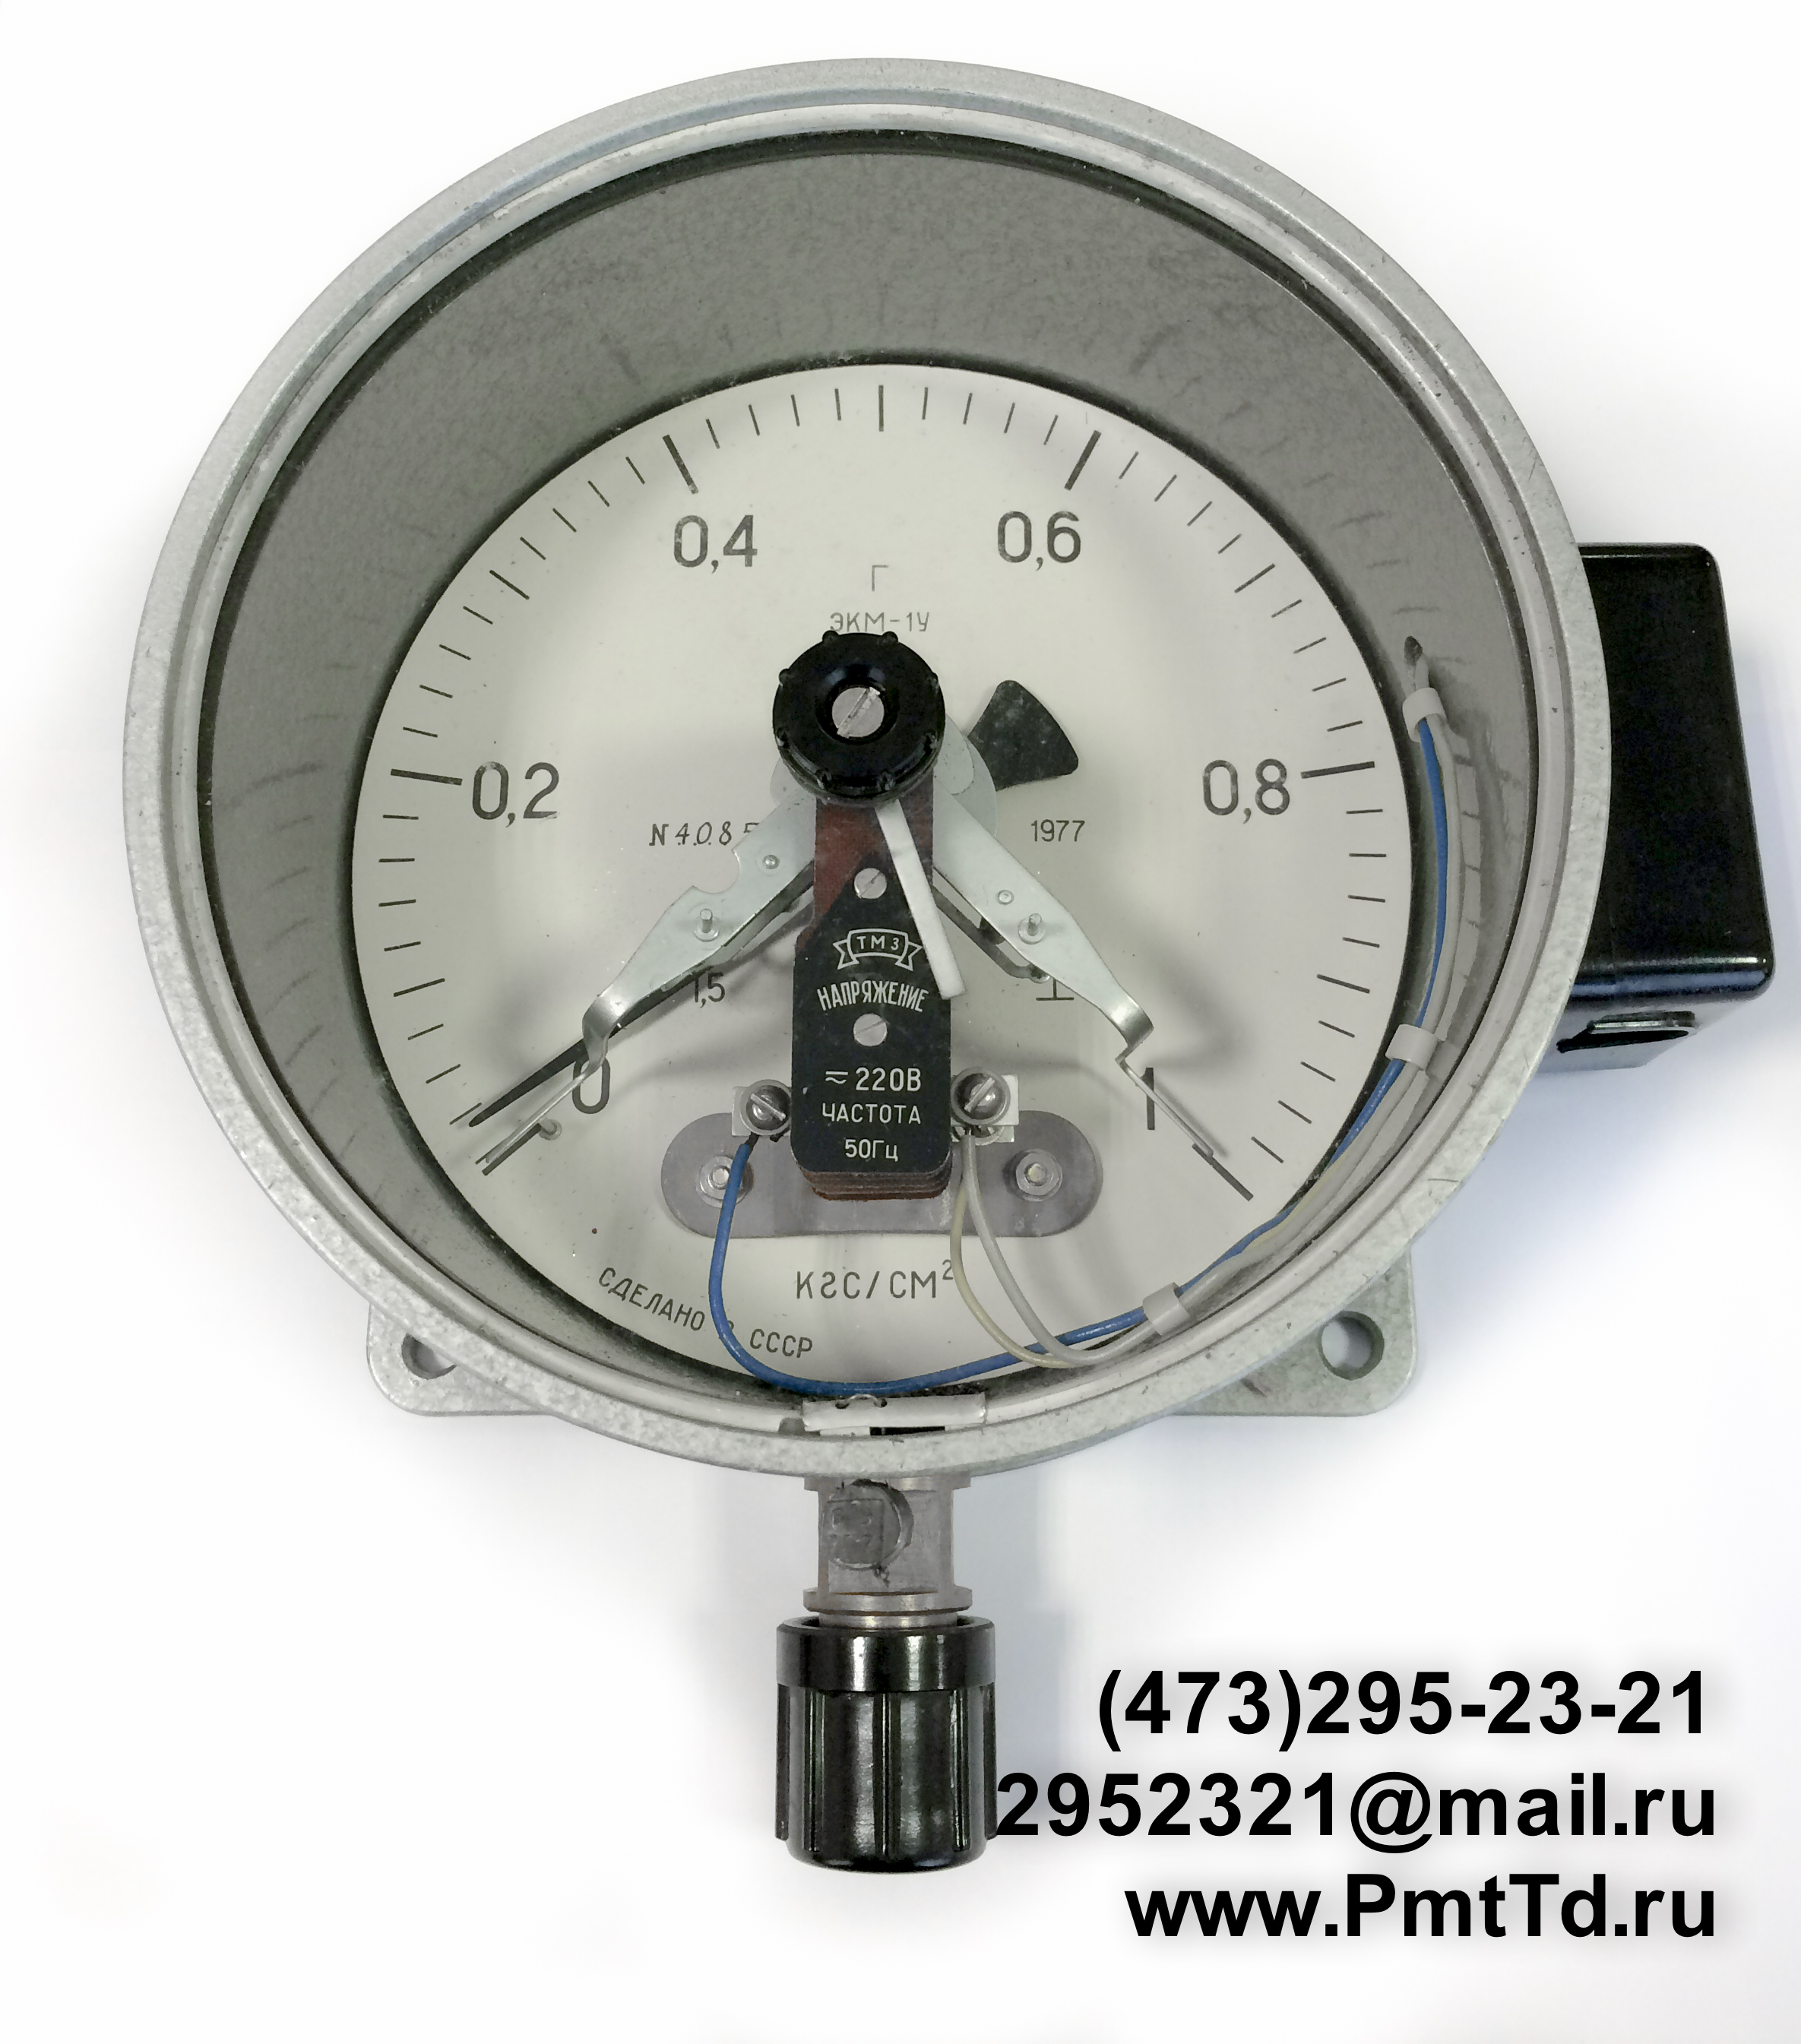 Электроконтактный манометр ЭКМ-1У 0-25 кгс/см2